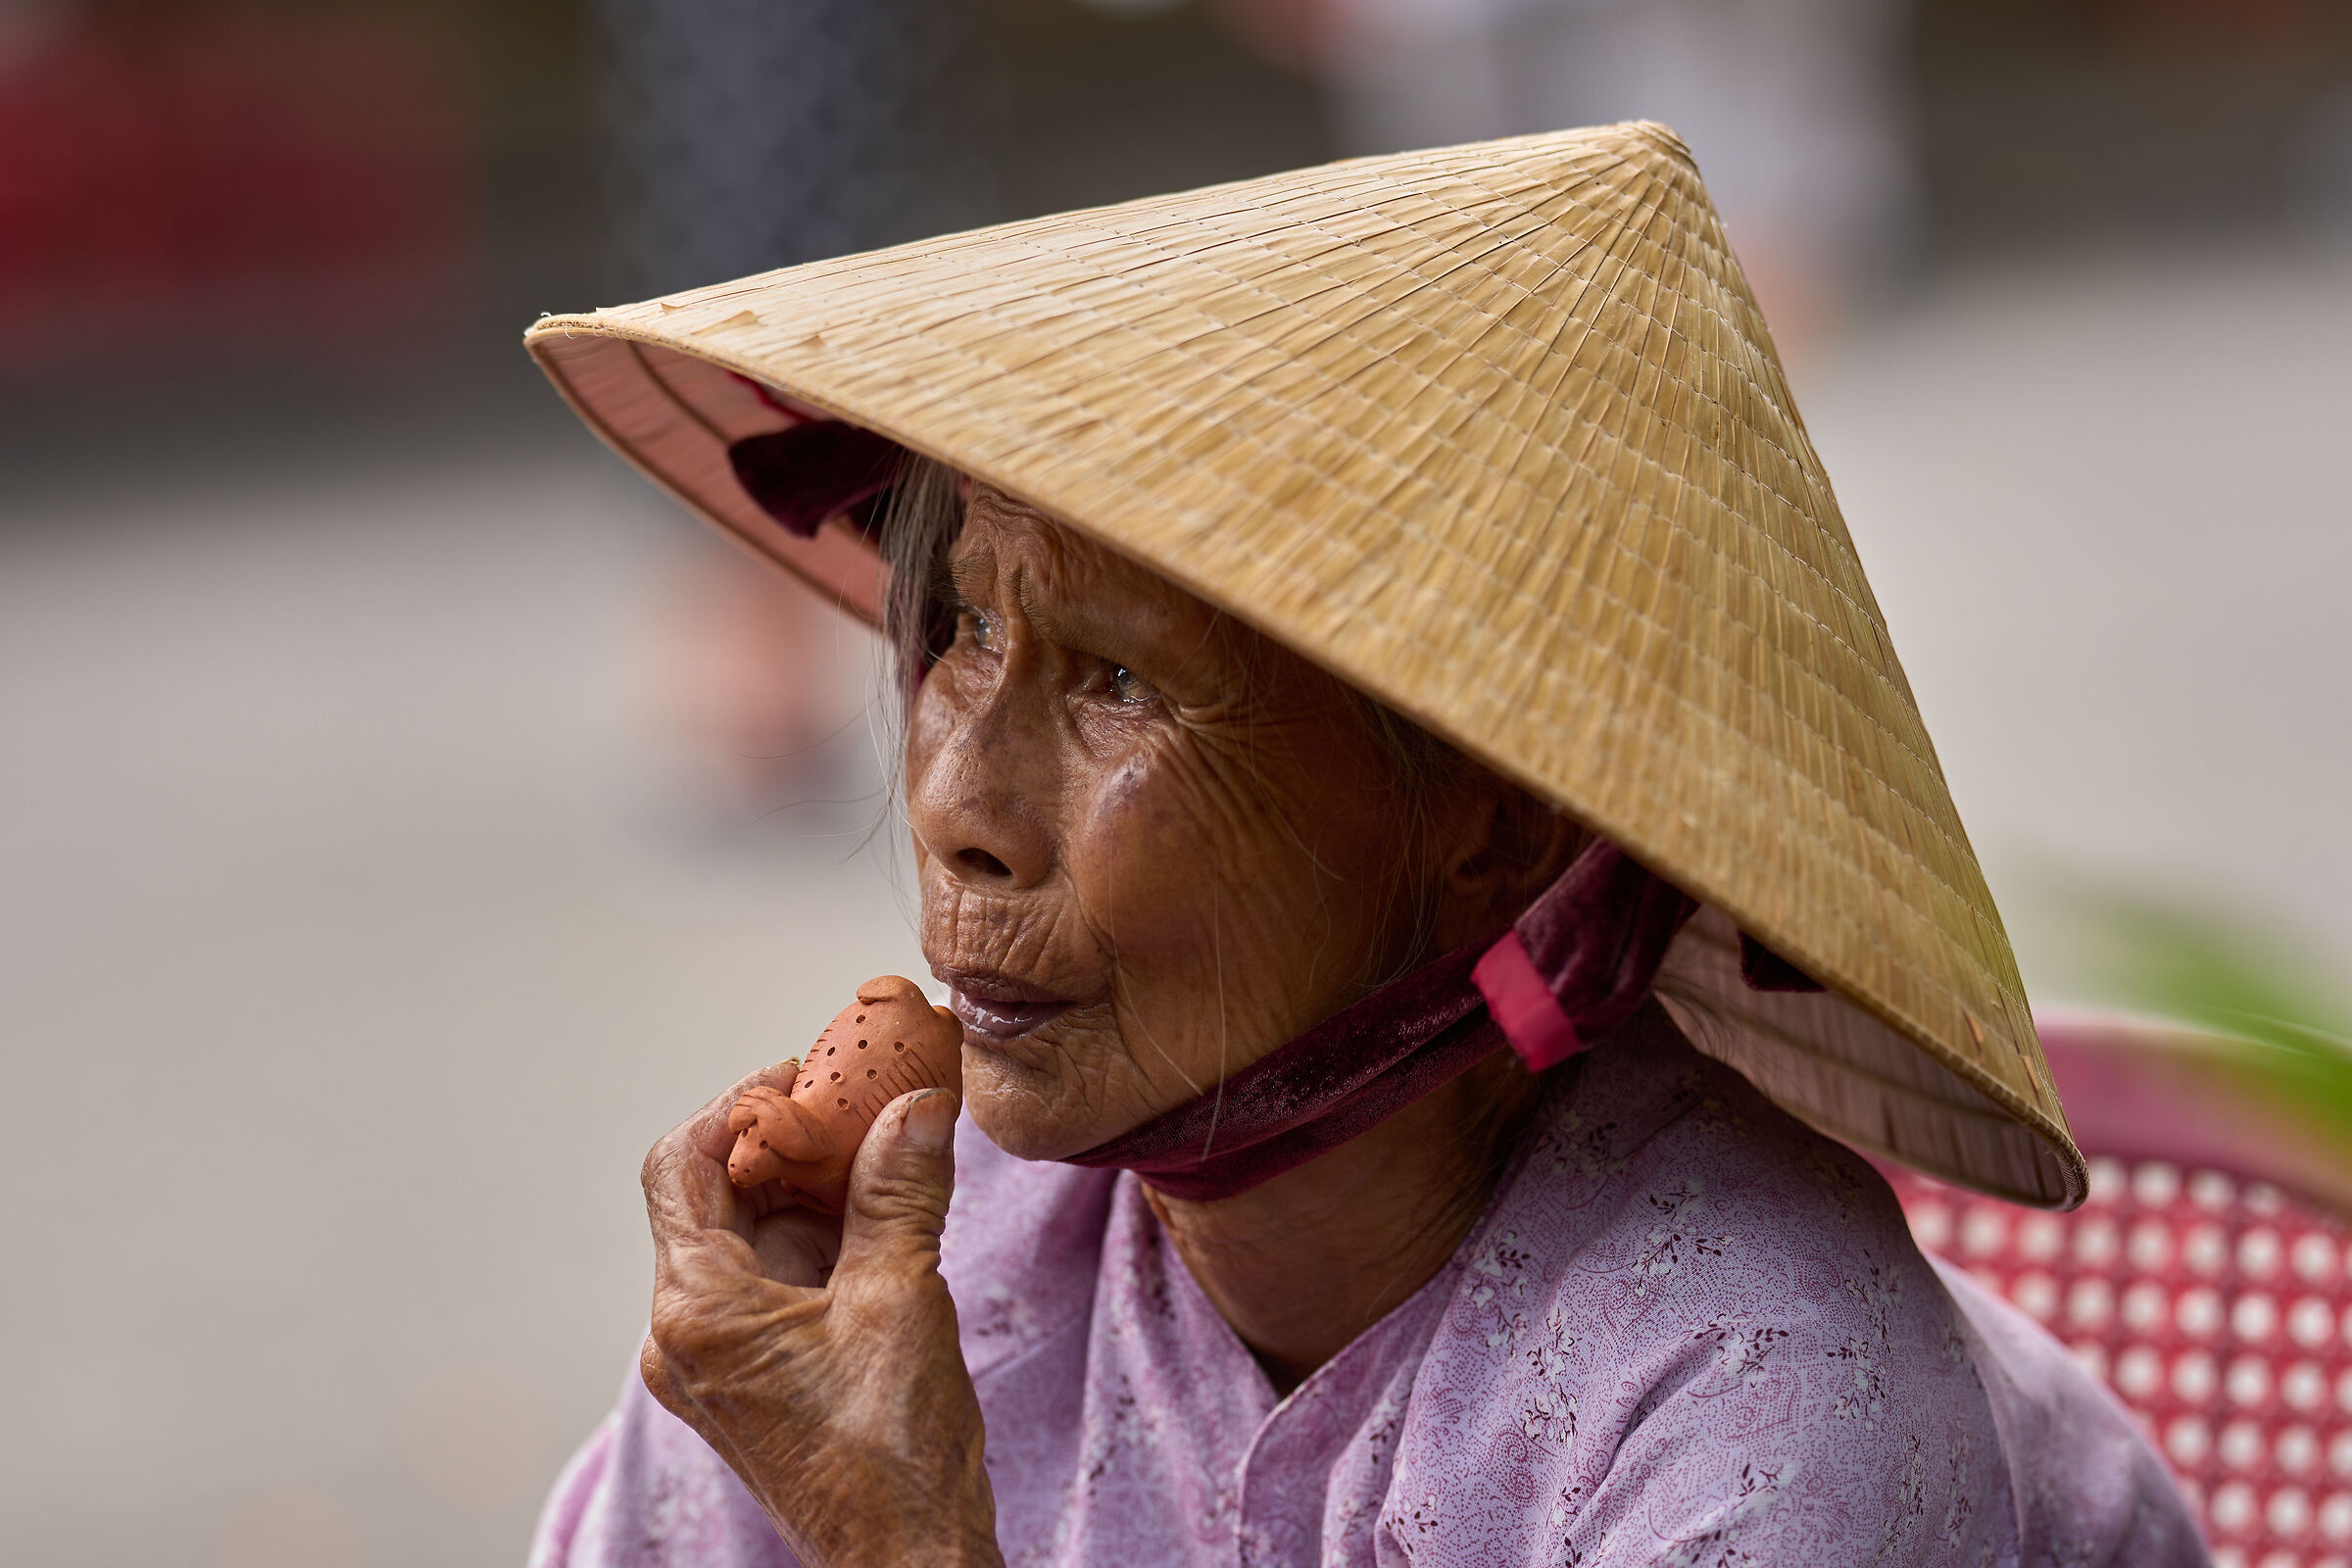 La donna che vendeva i fischietti (Hoi An - Vietnam)...